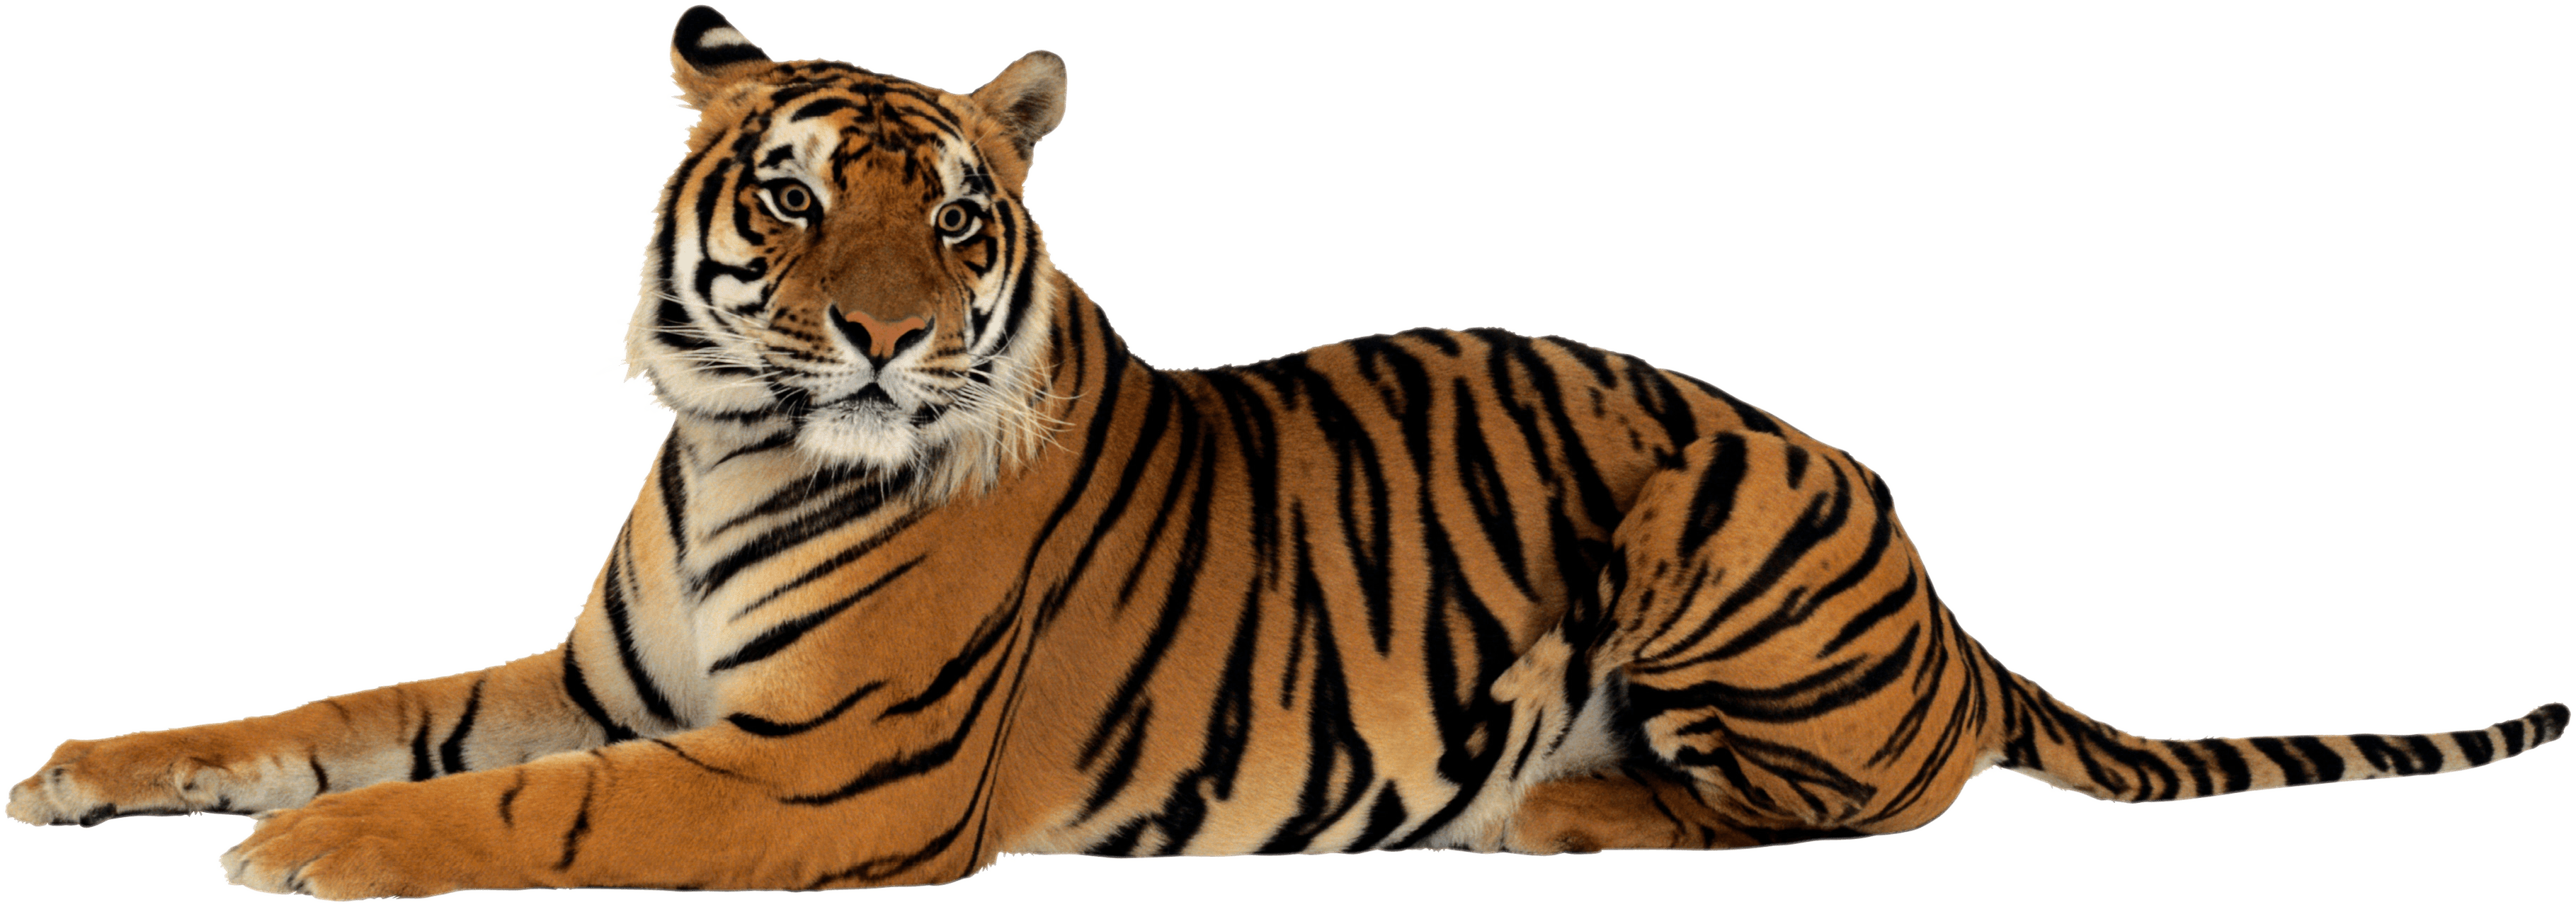 Bengal Tiger PNG Transparent Image